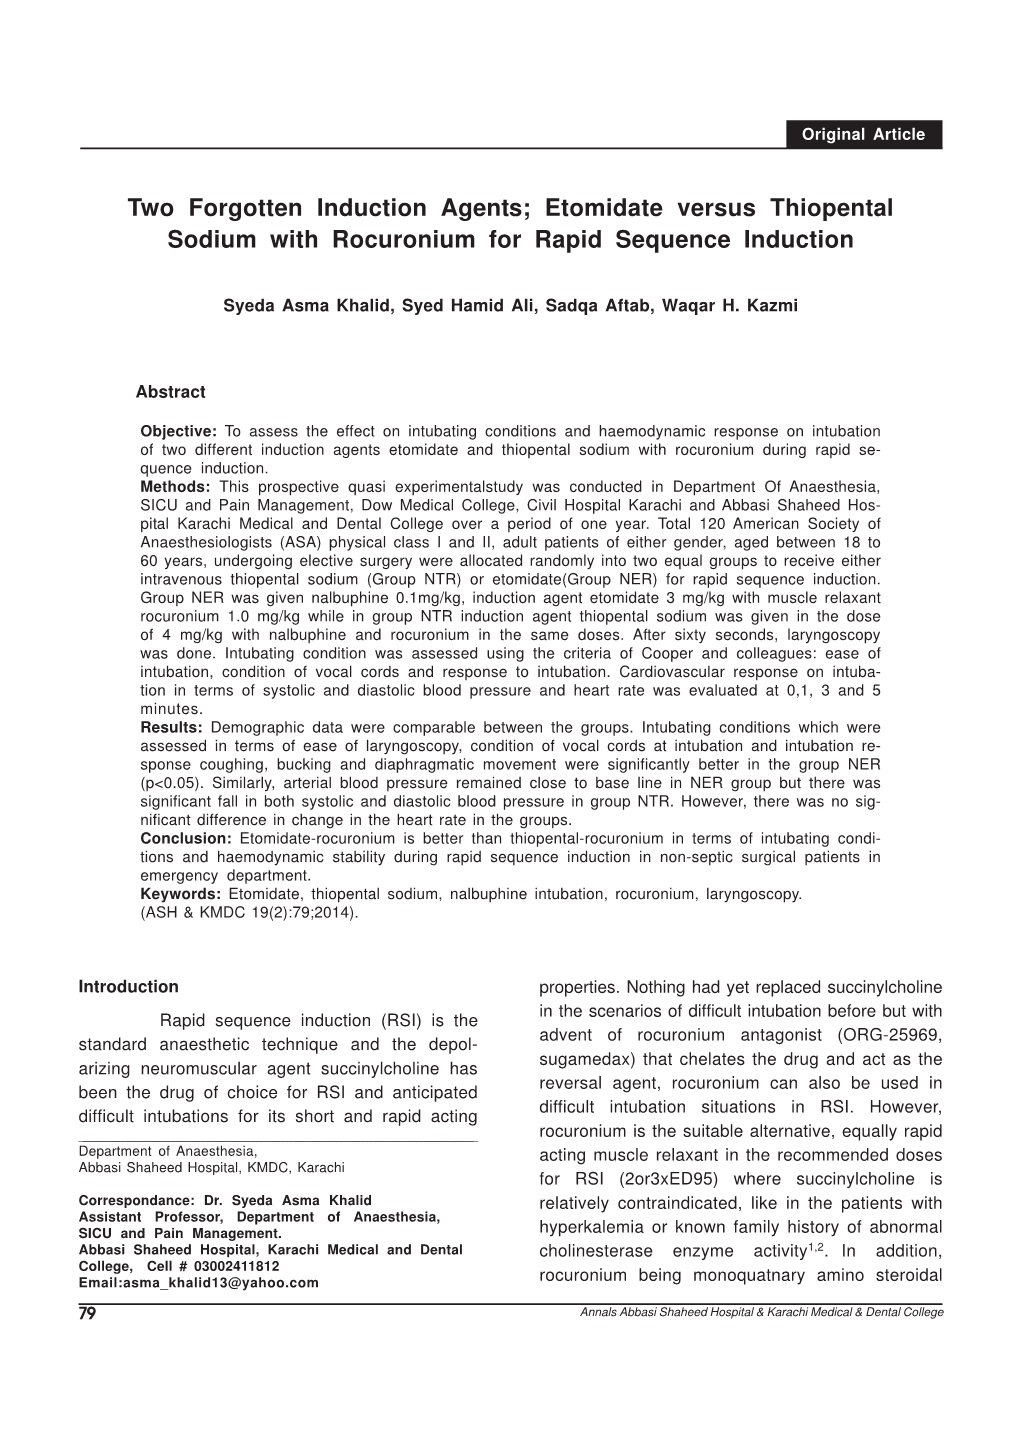 Etomidate Versus Thiopental Sodium with Rocuronium for Rapid Sequence Induction